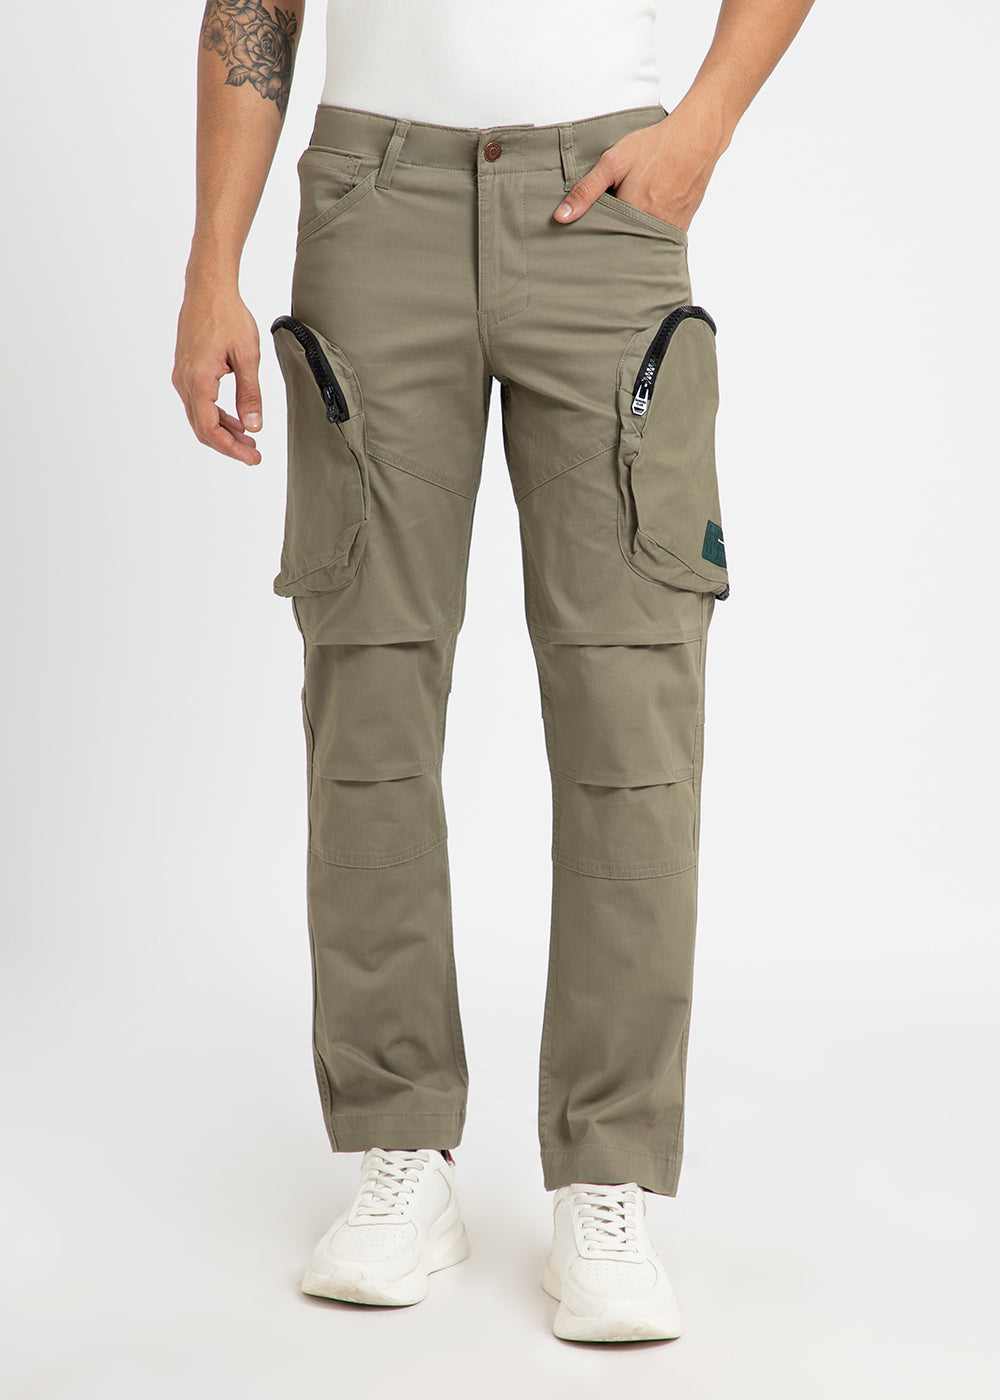 Khaki Green Zipper Cargo Pant